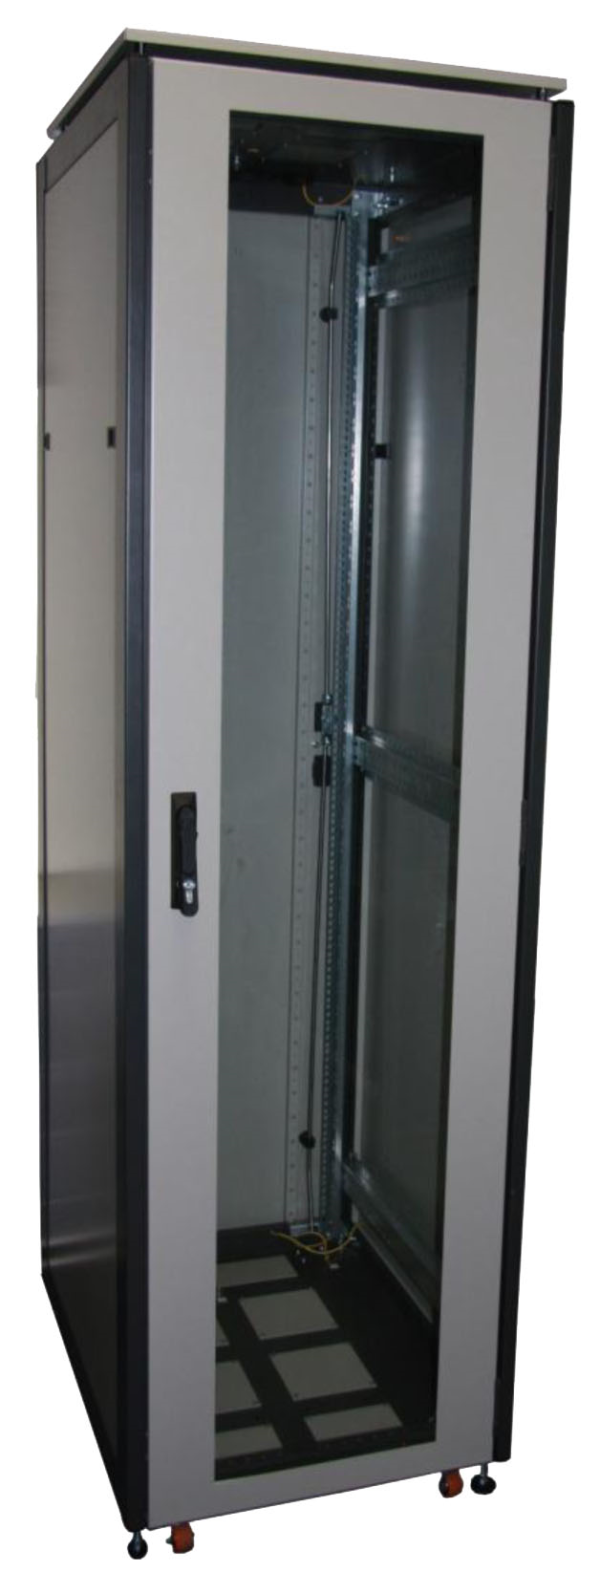 ССКТБ ТОМАСС ШТК-6622Э-00 - шкаф телекоммуникационный 19", 47U, 600х600х2200 мм, с металлической и стеклянной дверью